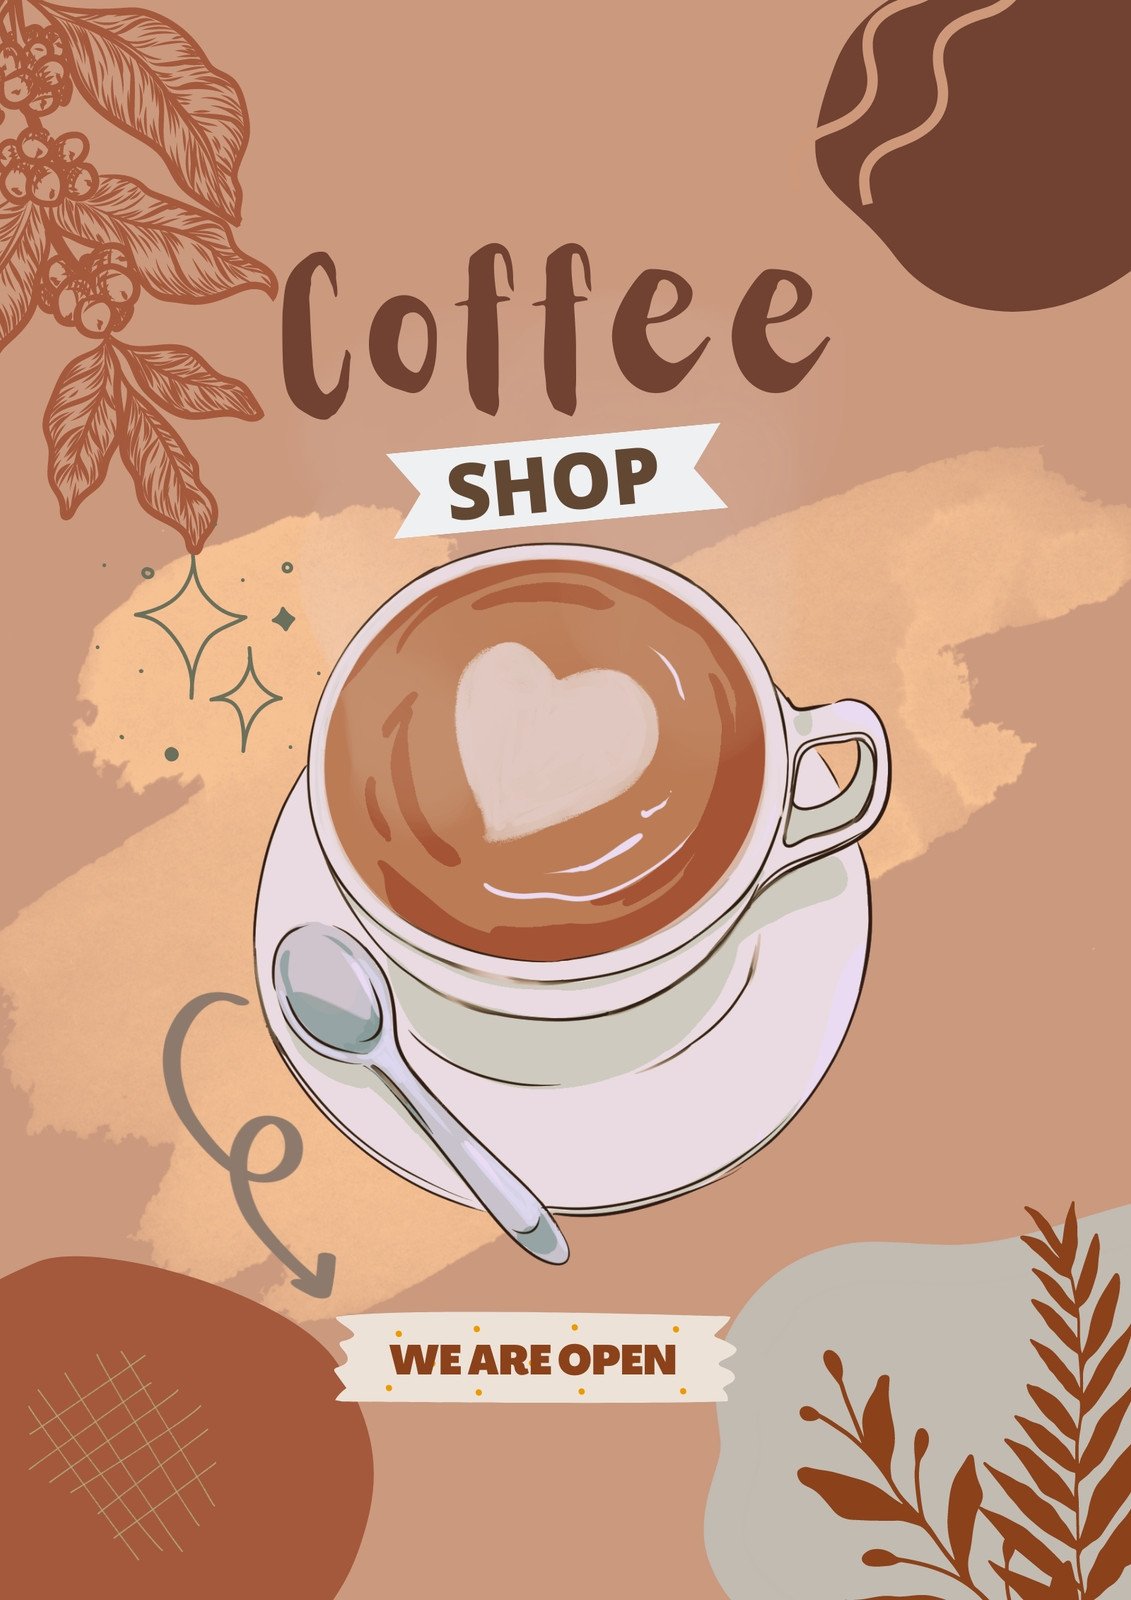 Coffee Advice, Wisdom from Coffee, handmade, coffee bar sign, coffee lover  gift